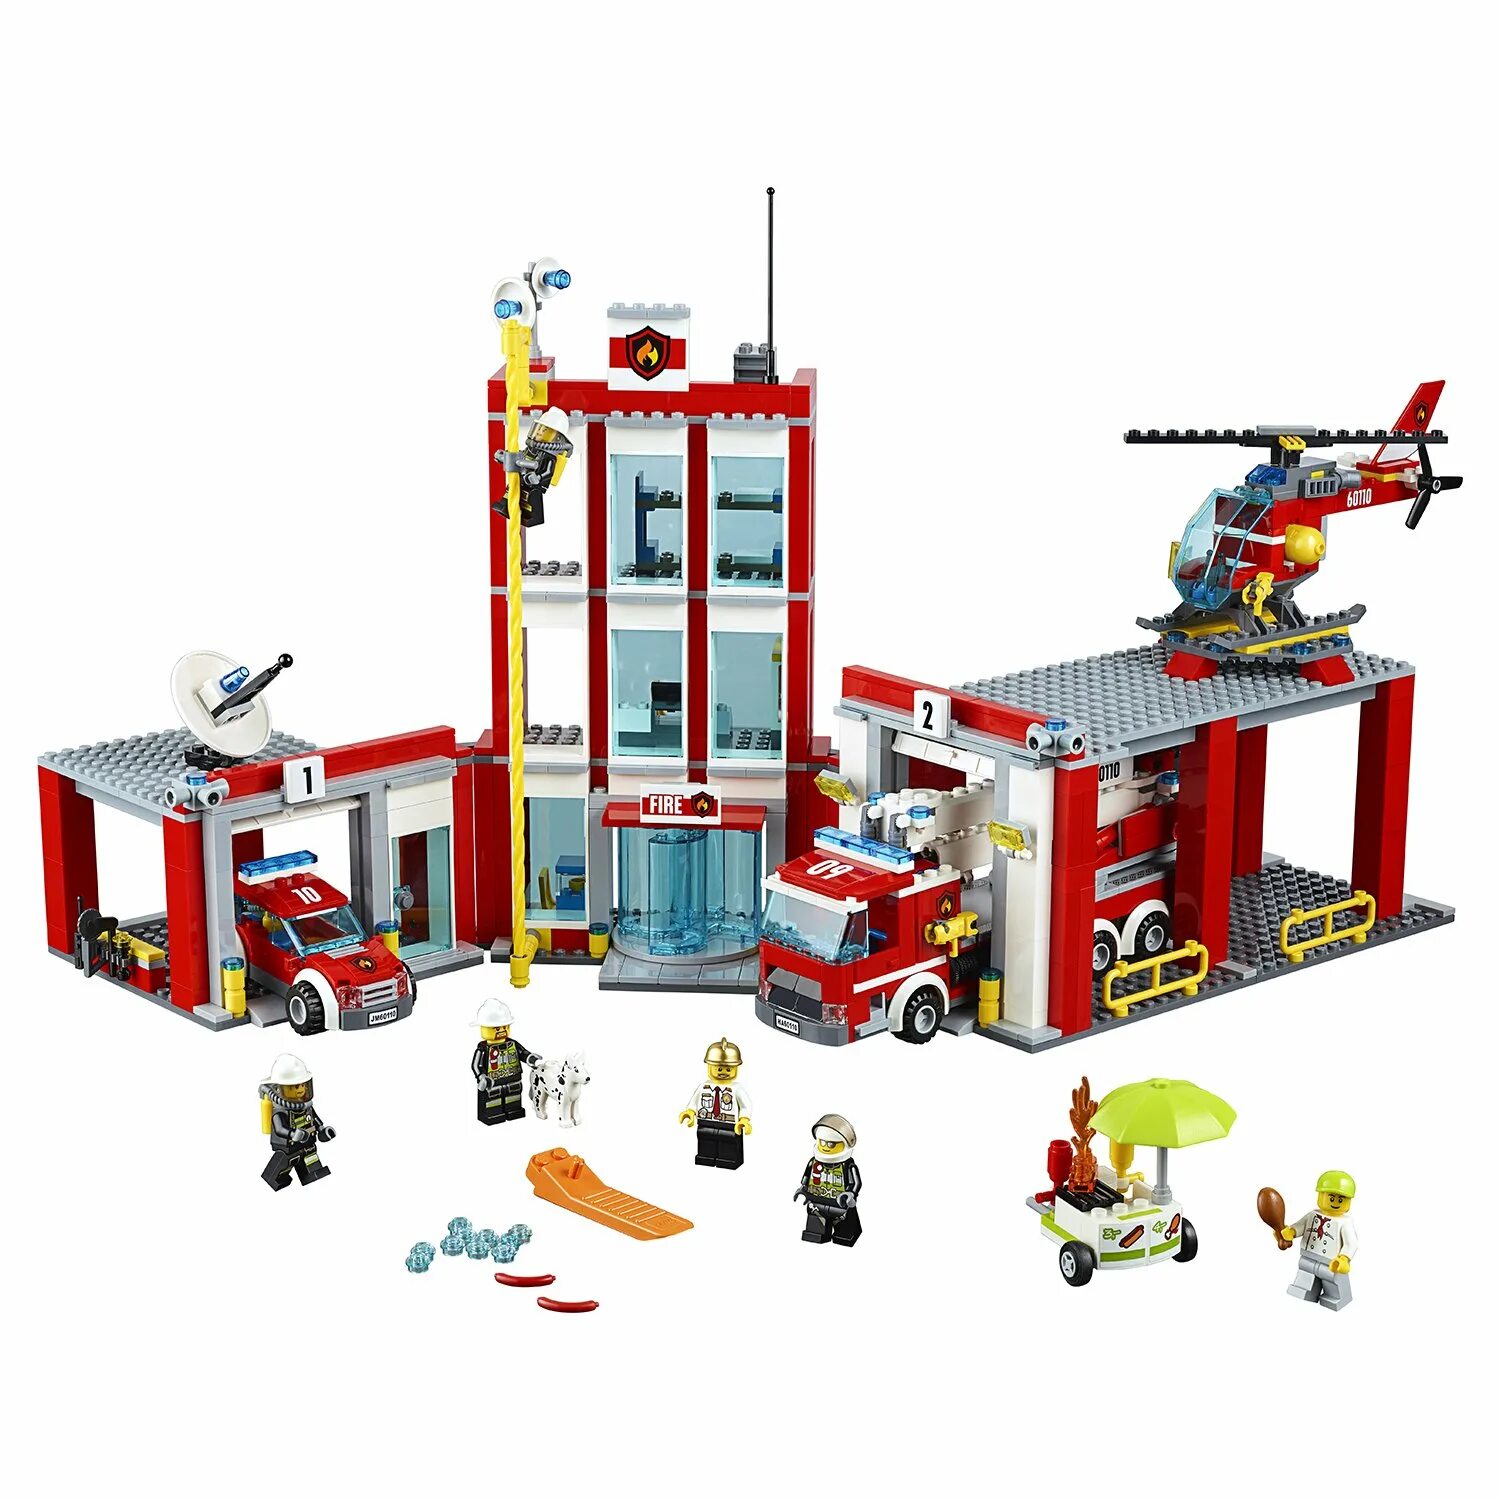 Лего Сити 60110. LEGO City Fire Station 60110. LEGO City 60110. LEGO City пожарная станция 60110. Сити пожарная